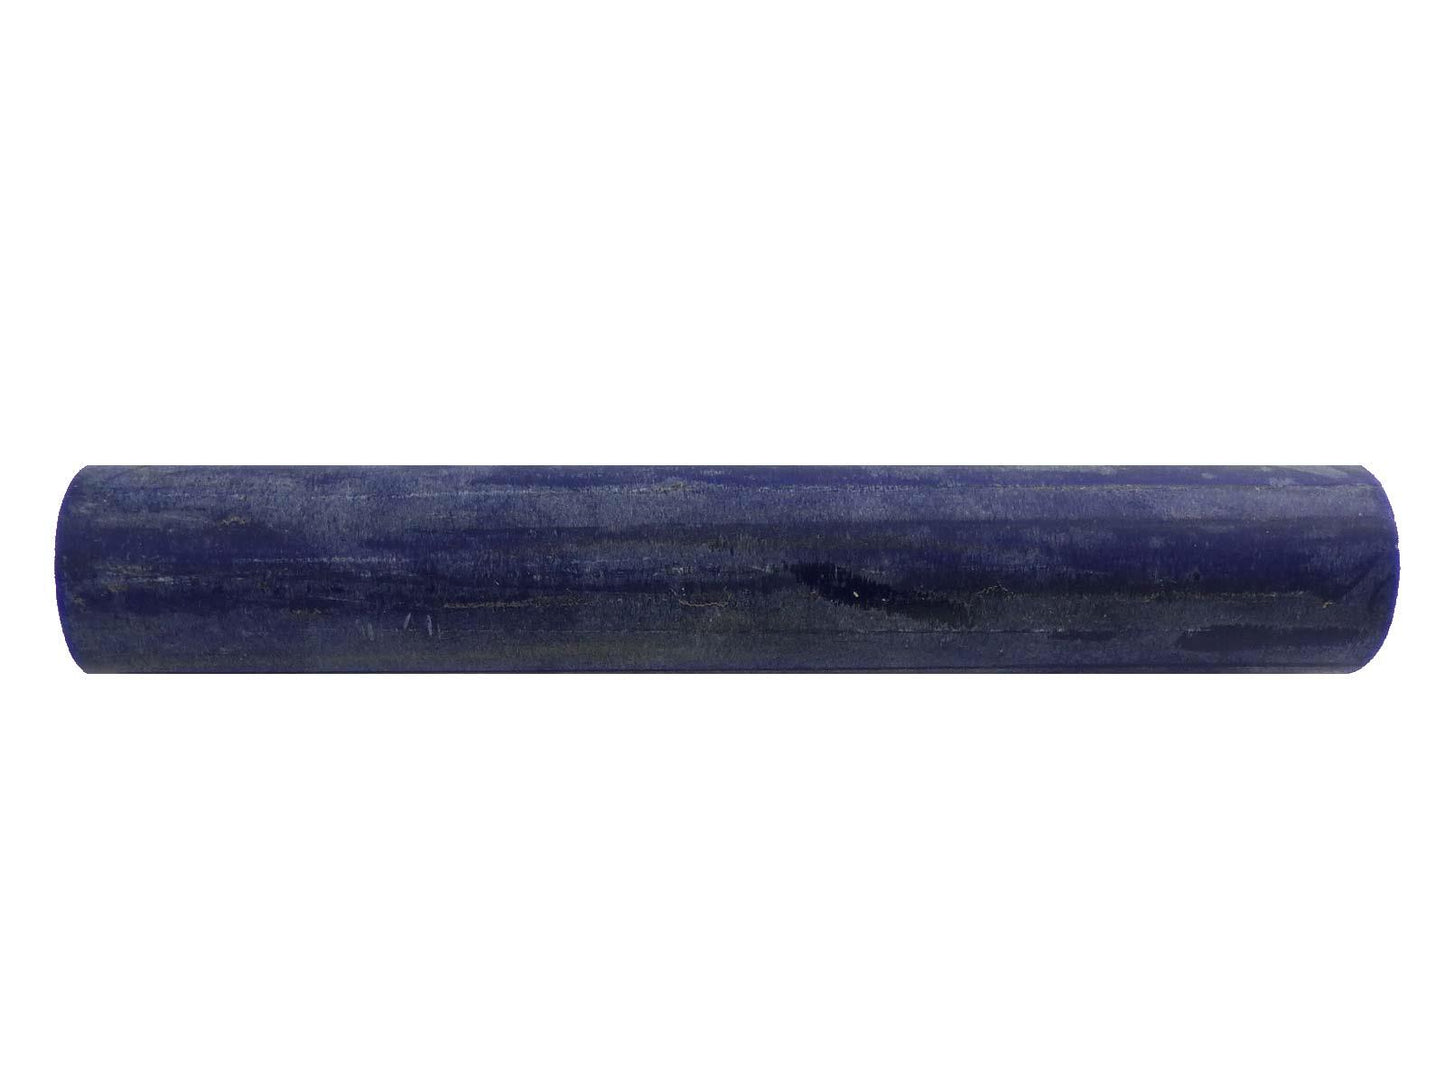 Turners' Mill Lapis Lazuli Natural Polyester Rod - 150x20x20mm (5.9x0.79x0.79"), 6x3/4x3/4"